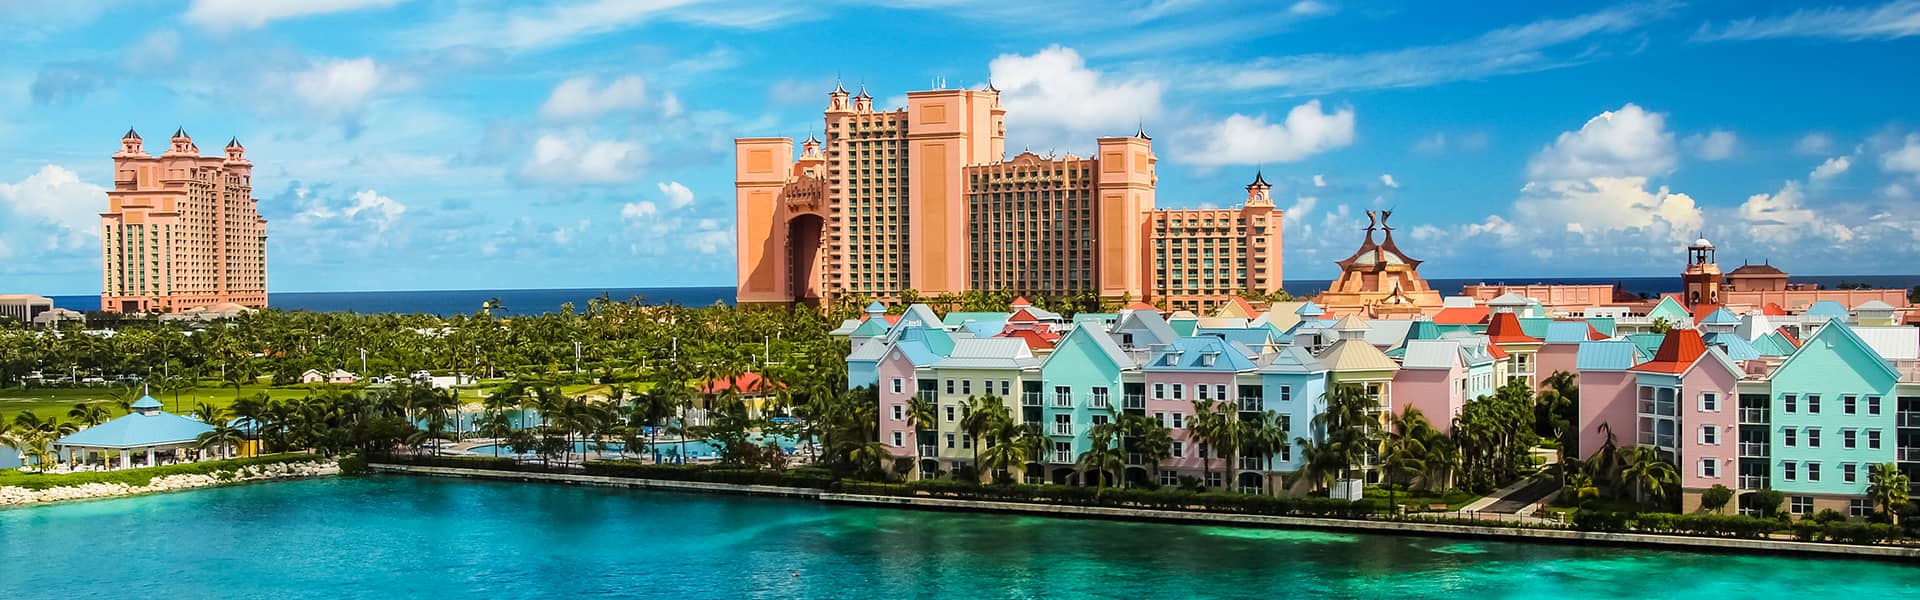 Bahamas: Great Stirrup Cay, Key West e Nassau